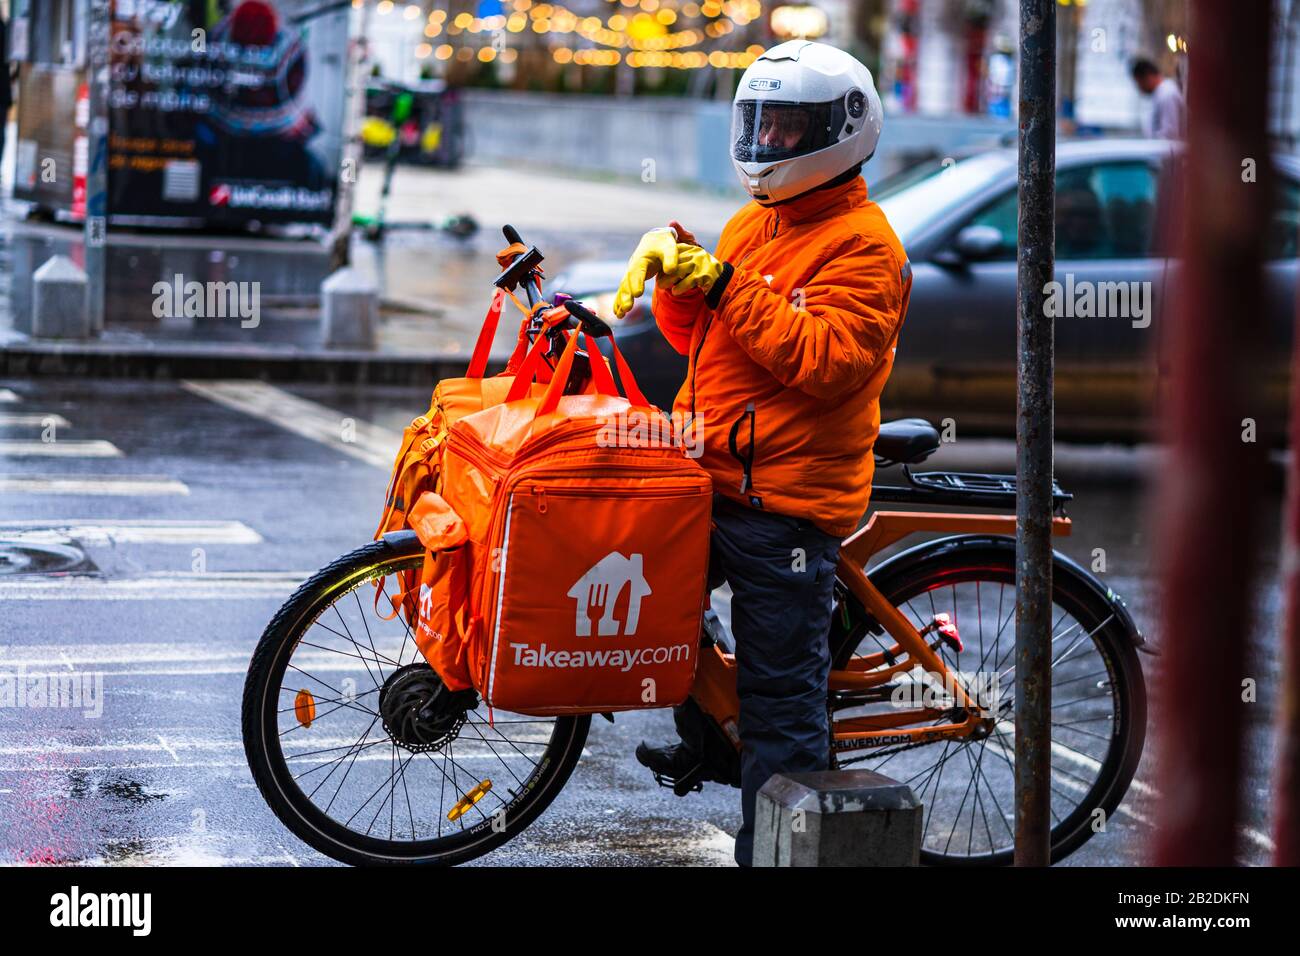 Hombre joven en una bicicleta eléctrica con el logotipo de takeaway.com que  entrega alimentos durante un día lluvioso en Bucarest, Rumania, 2020  Fotografía de stock - Alamy